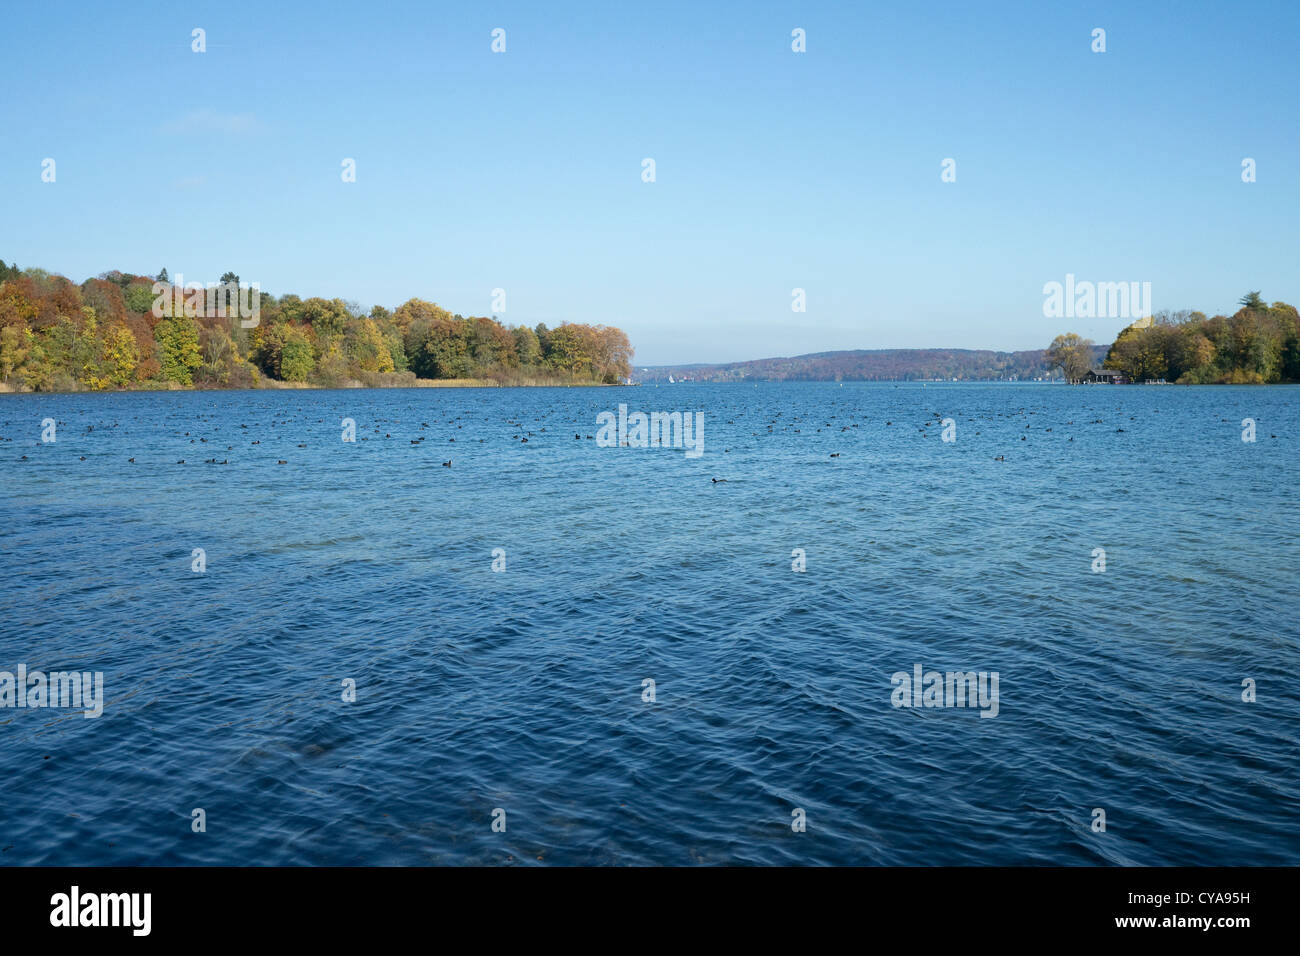 Le lac de Starnberg en automne avec de nombreux oiseaux aquatiques Banque D'Images